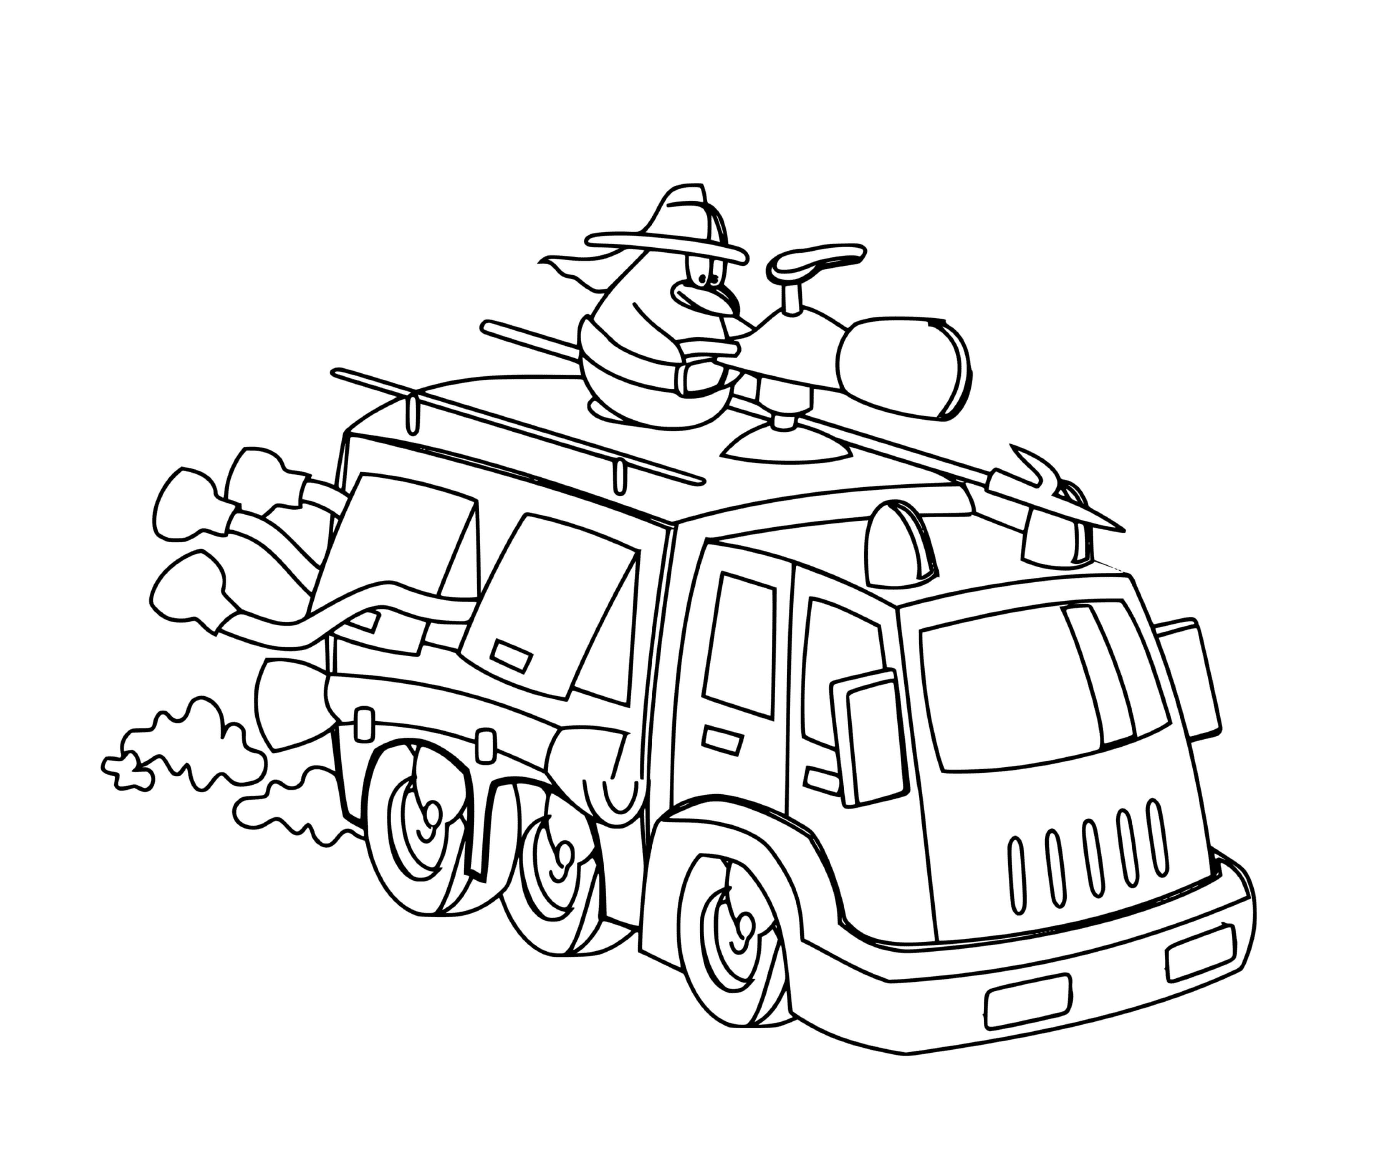 coloriage un dessin anime sur un camion de pompier a pleine vitesse